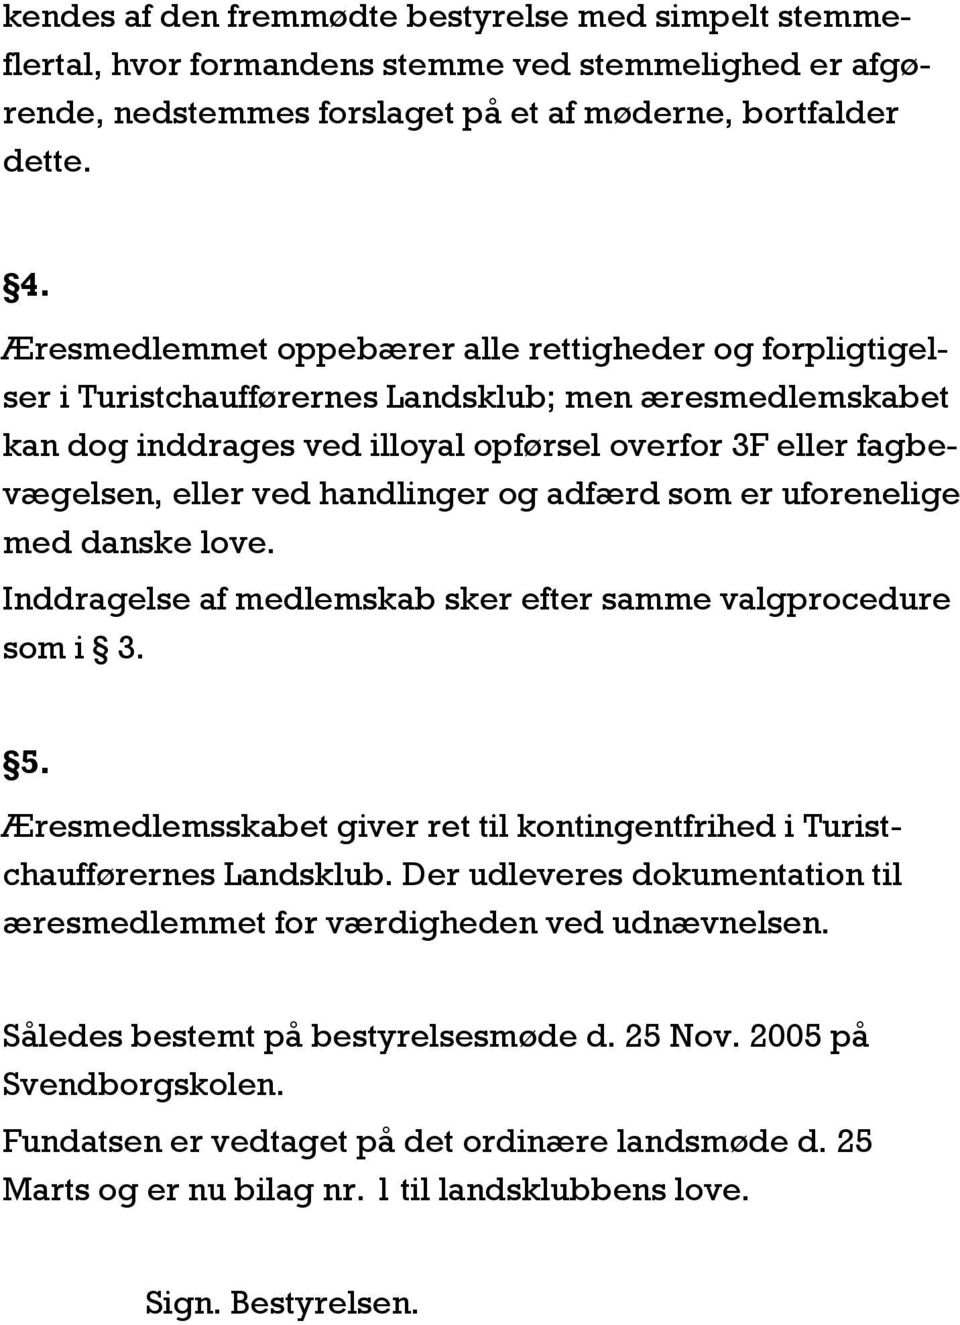 handlinger og adfærd som er uforenelige med danske love. Inddragelse af medlemskab sker efter samme valgprocedure som i 3. 5.